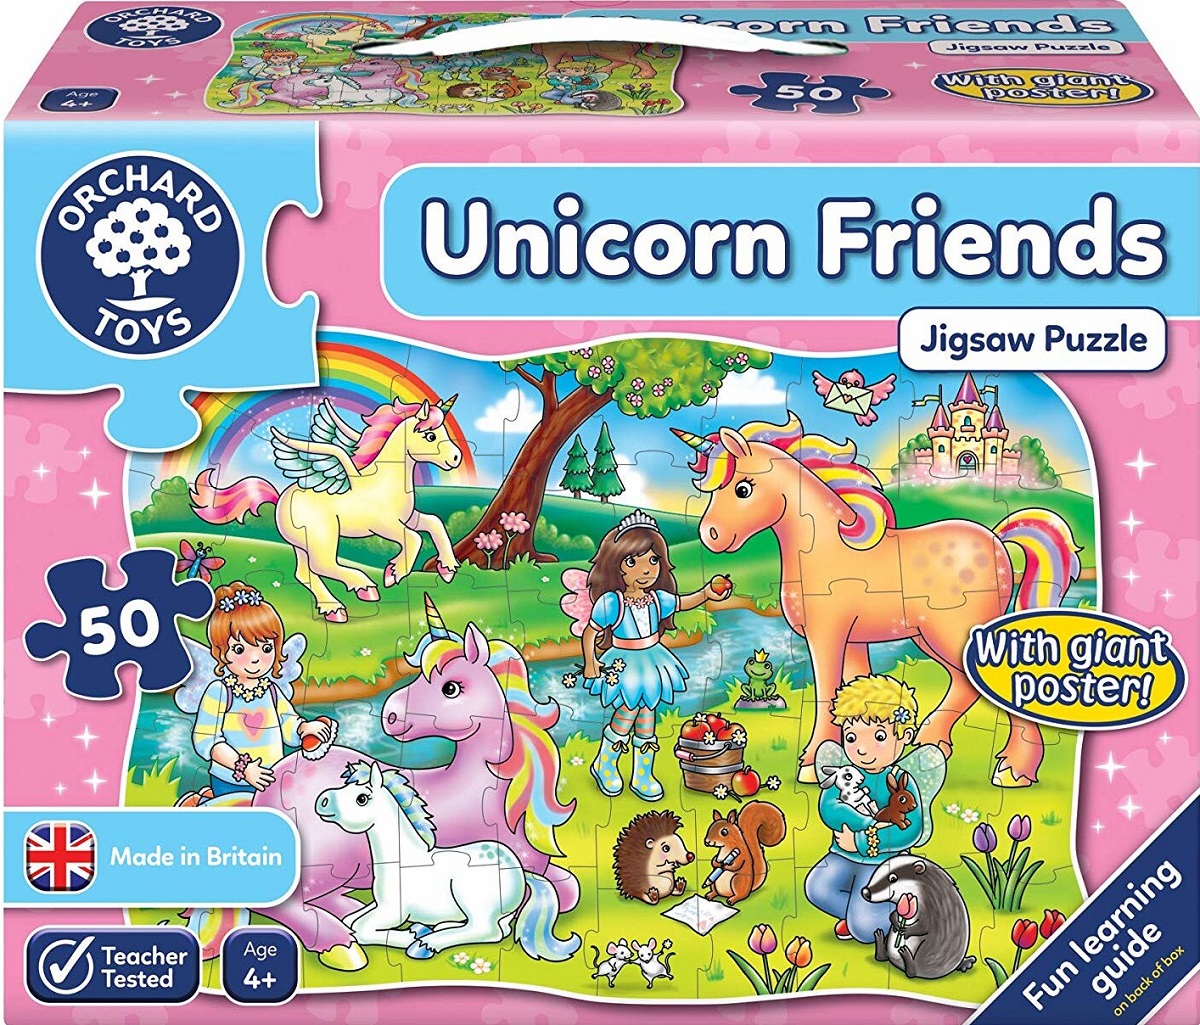 Puzzle Unicorn friends. Prietenii unicornului